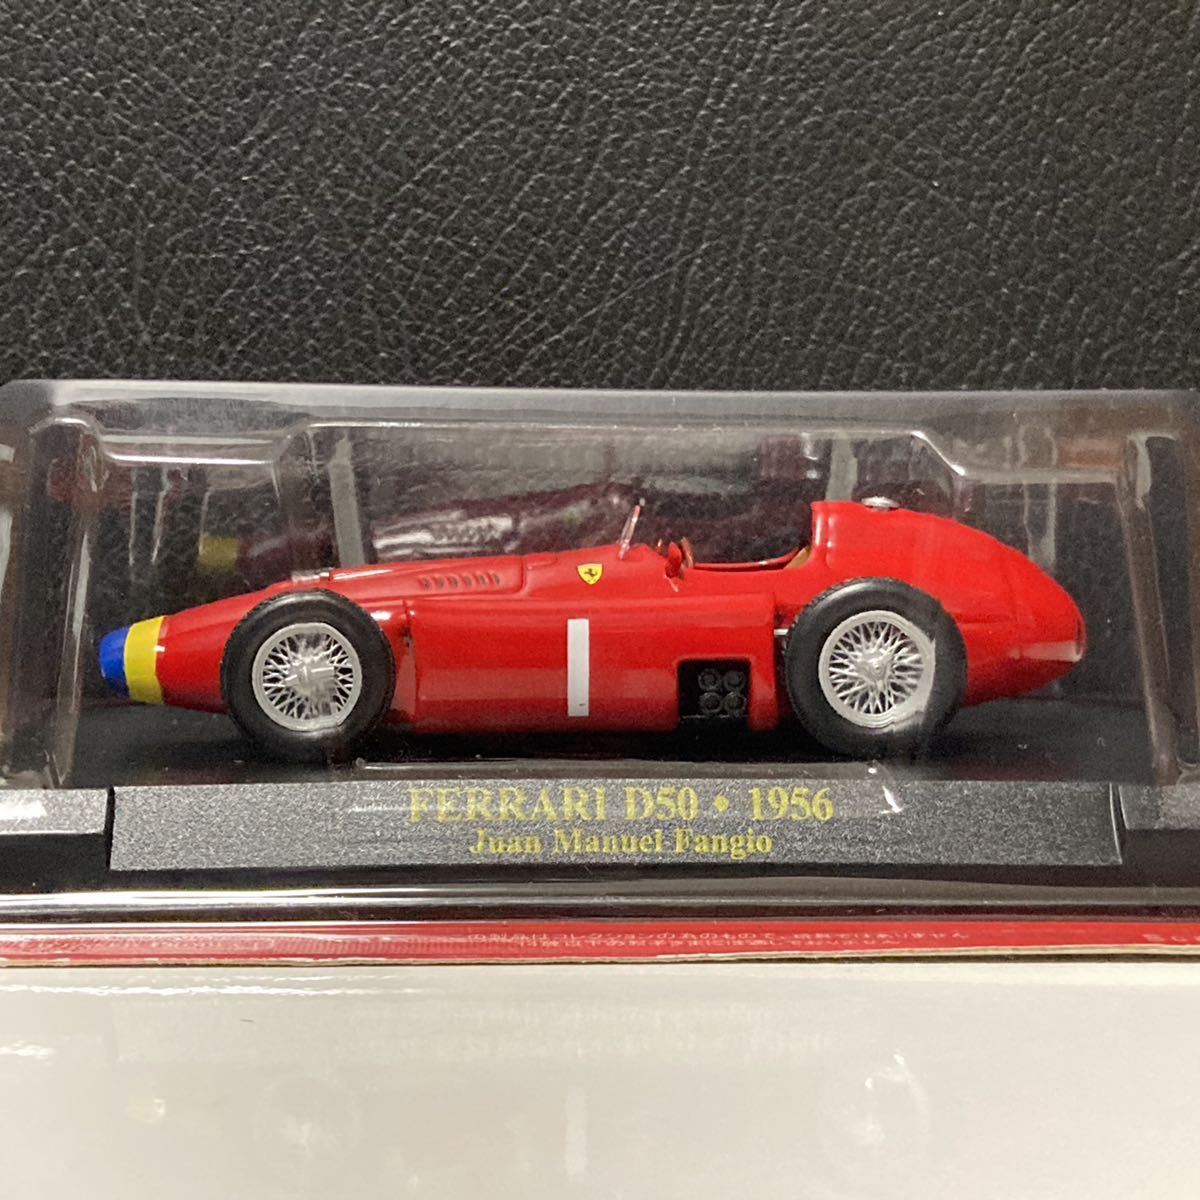 1/43 アシェット フェラーリ D50 Ferrari F1 1956 Racing フェラーリ 